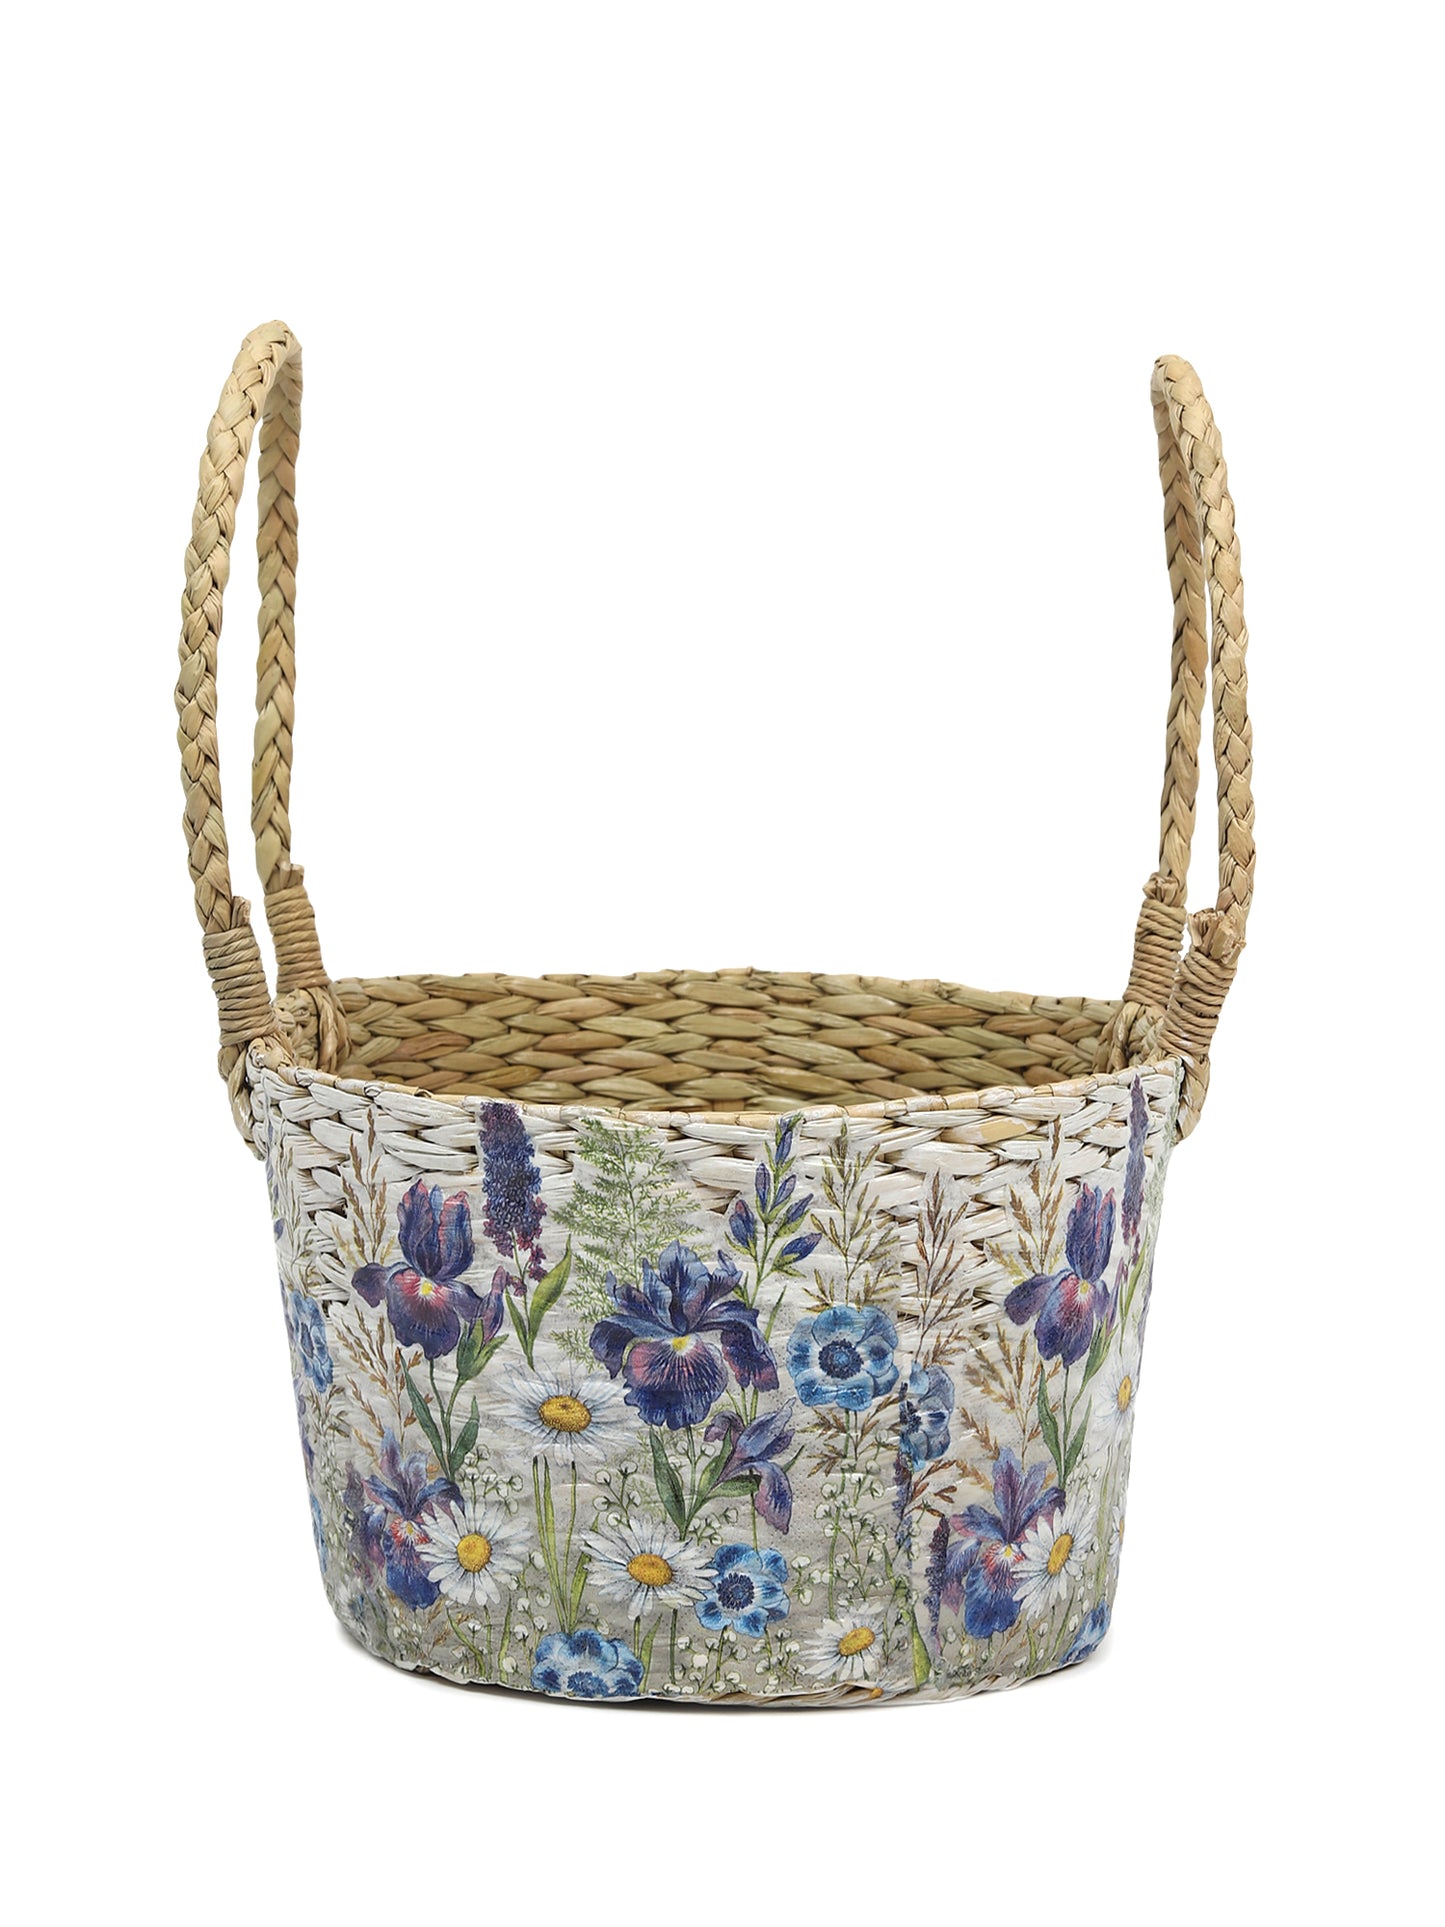 Seagrass Hamper Basket | Cane Gift Hamper Basket